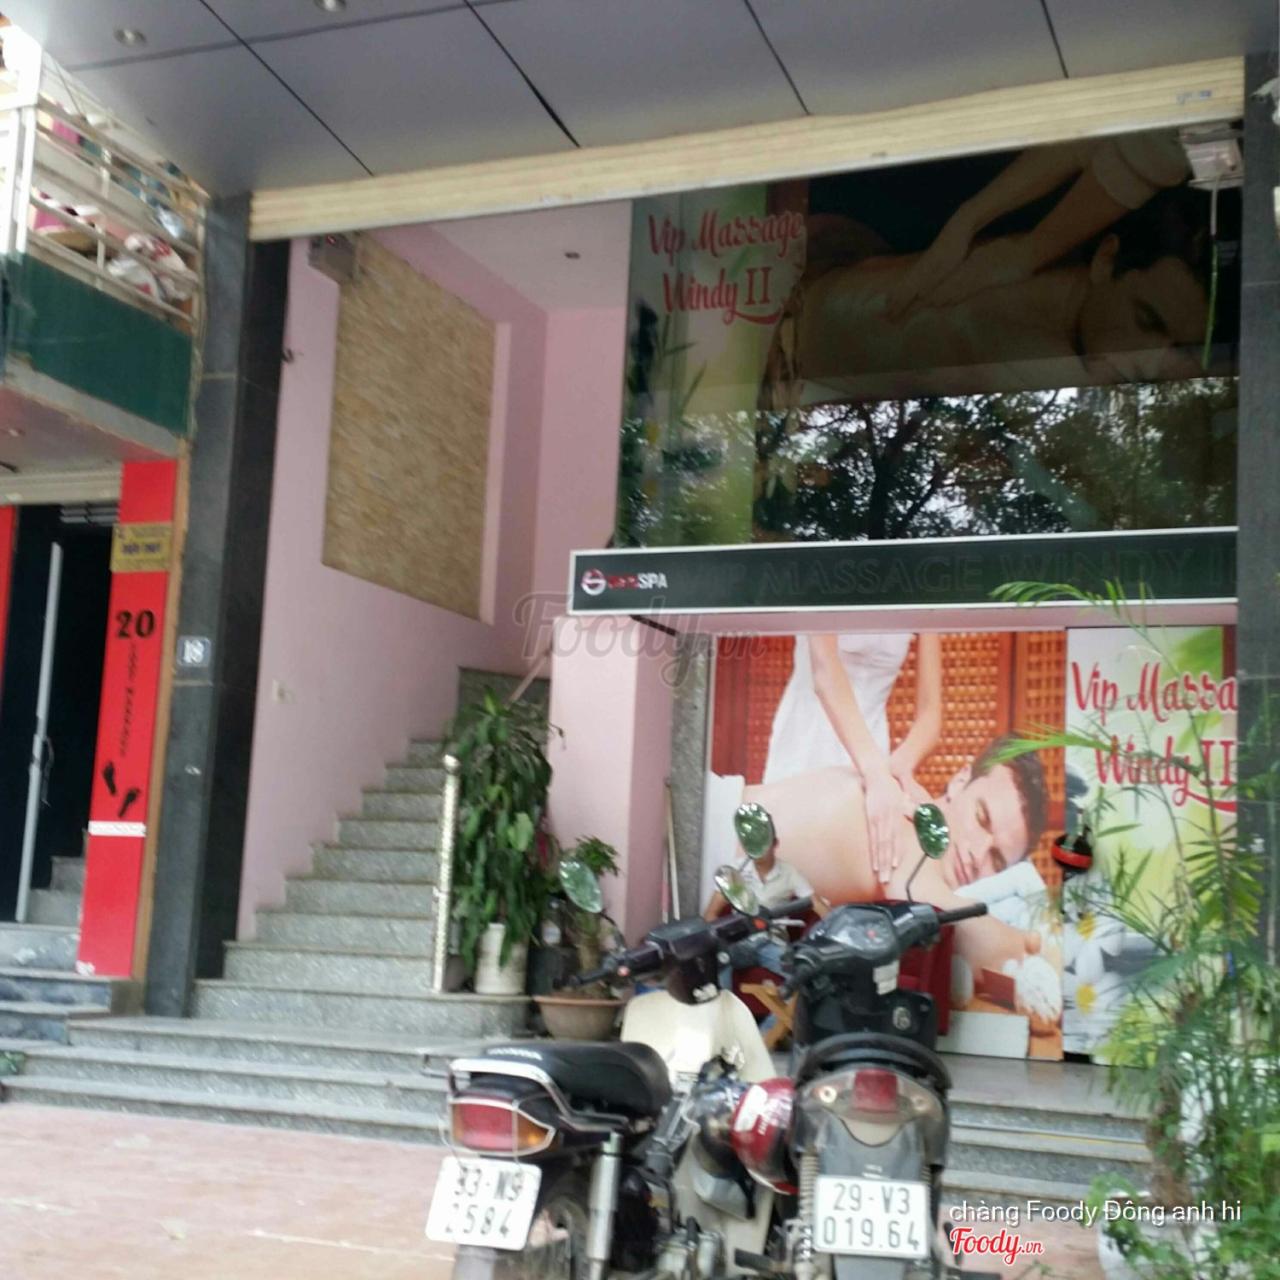 Vip Massage Windy 2 Ở Quận Cầu Giấy, Hà Nội | Album Ảnh | Vip Massage Windy  2 | Foody.Vn